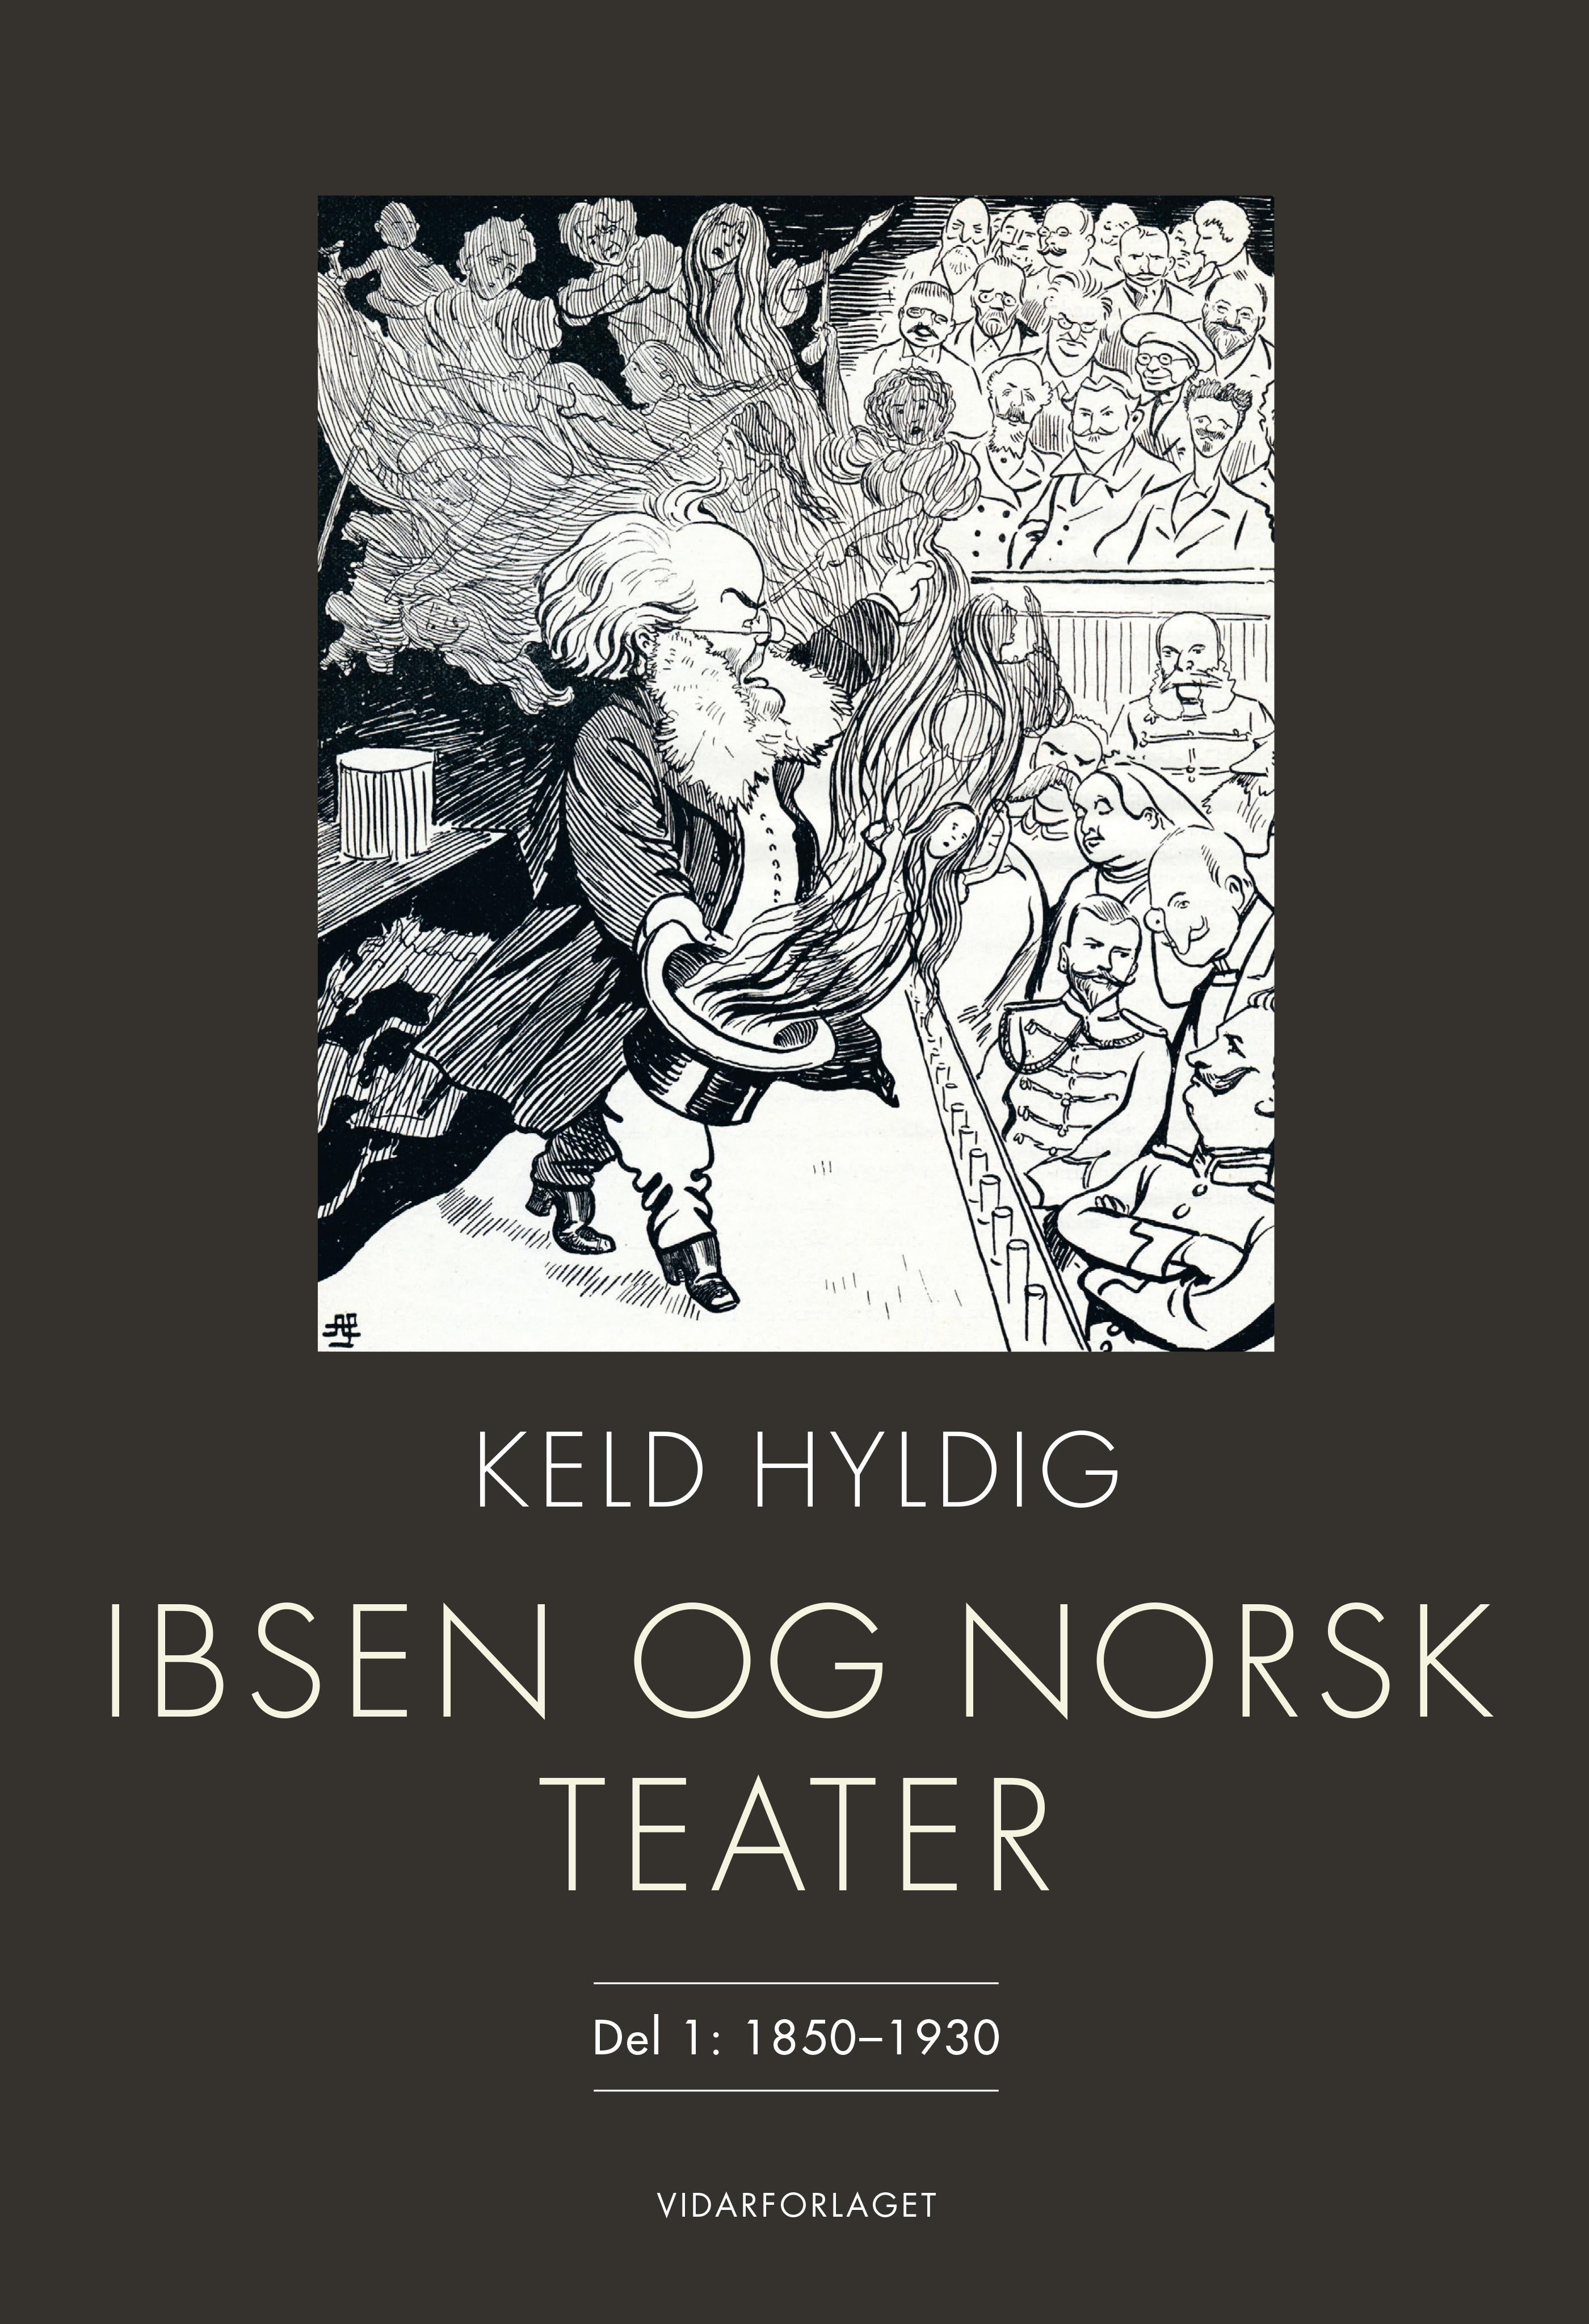 Ibsen og norsk teater: Del 1: 1850-1930